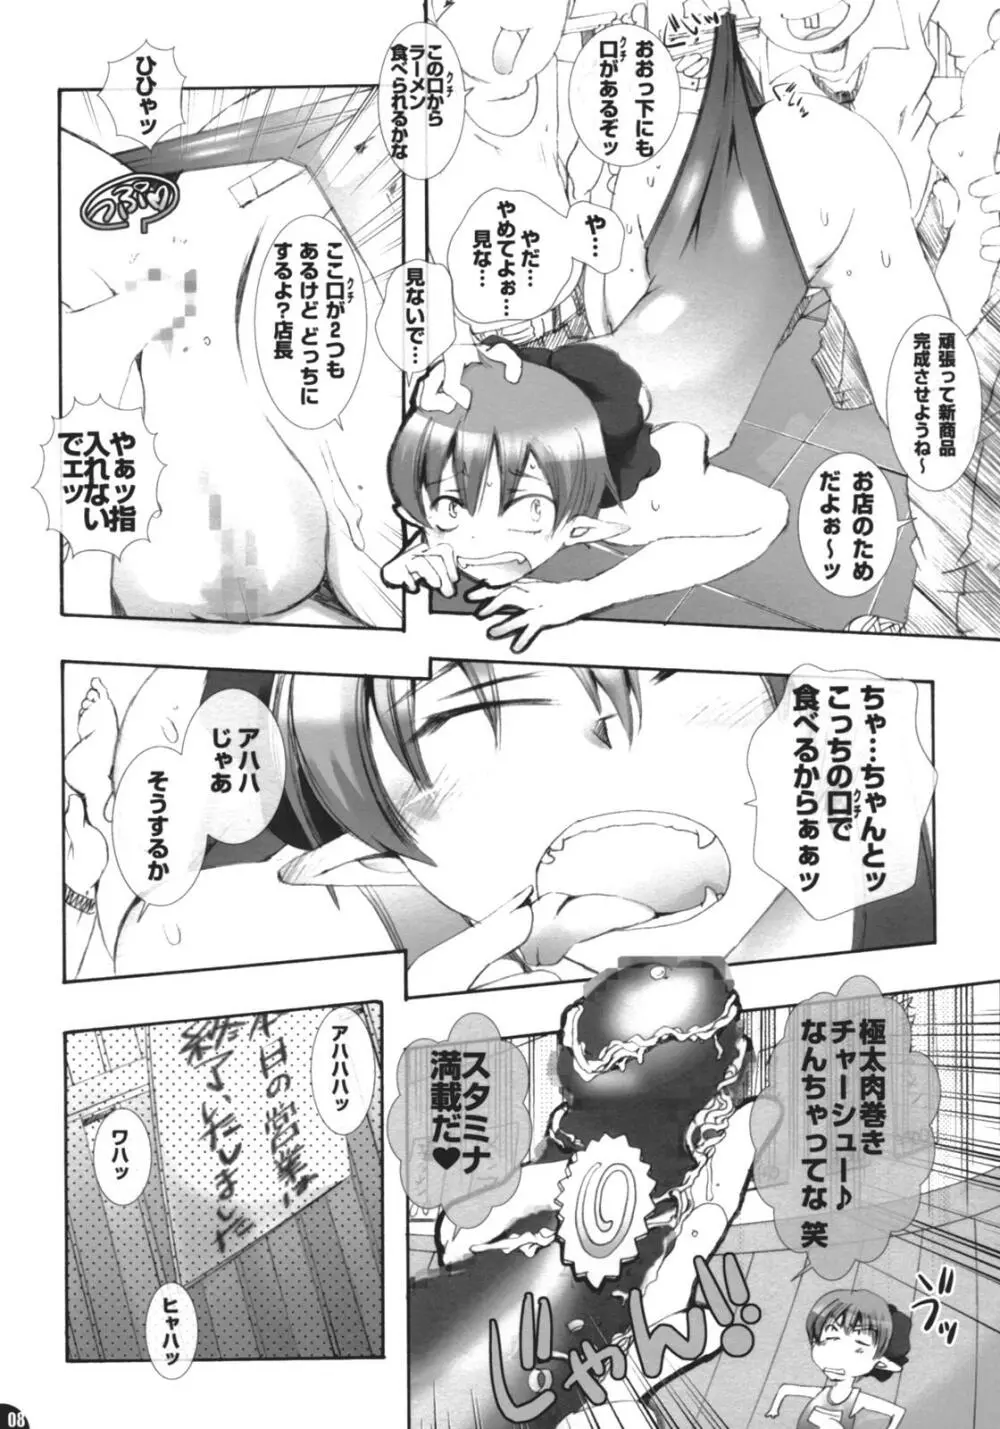 Pleco ぬこぬこむすめバイトニッキ No.10.5 7ページ